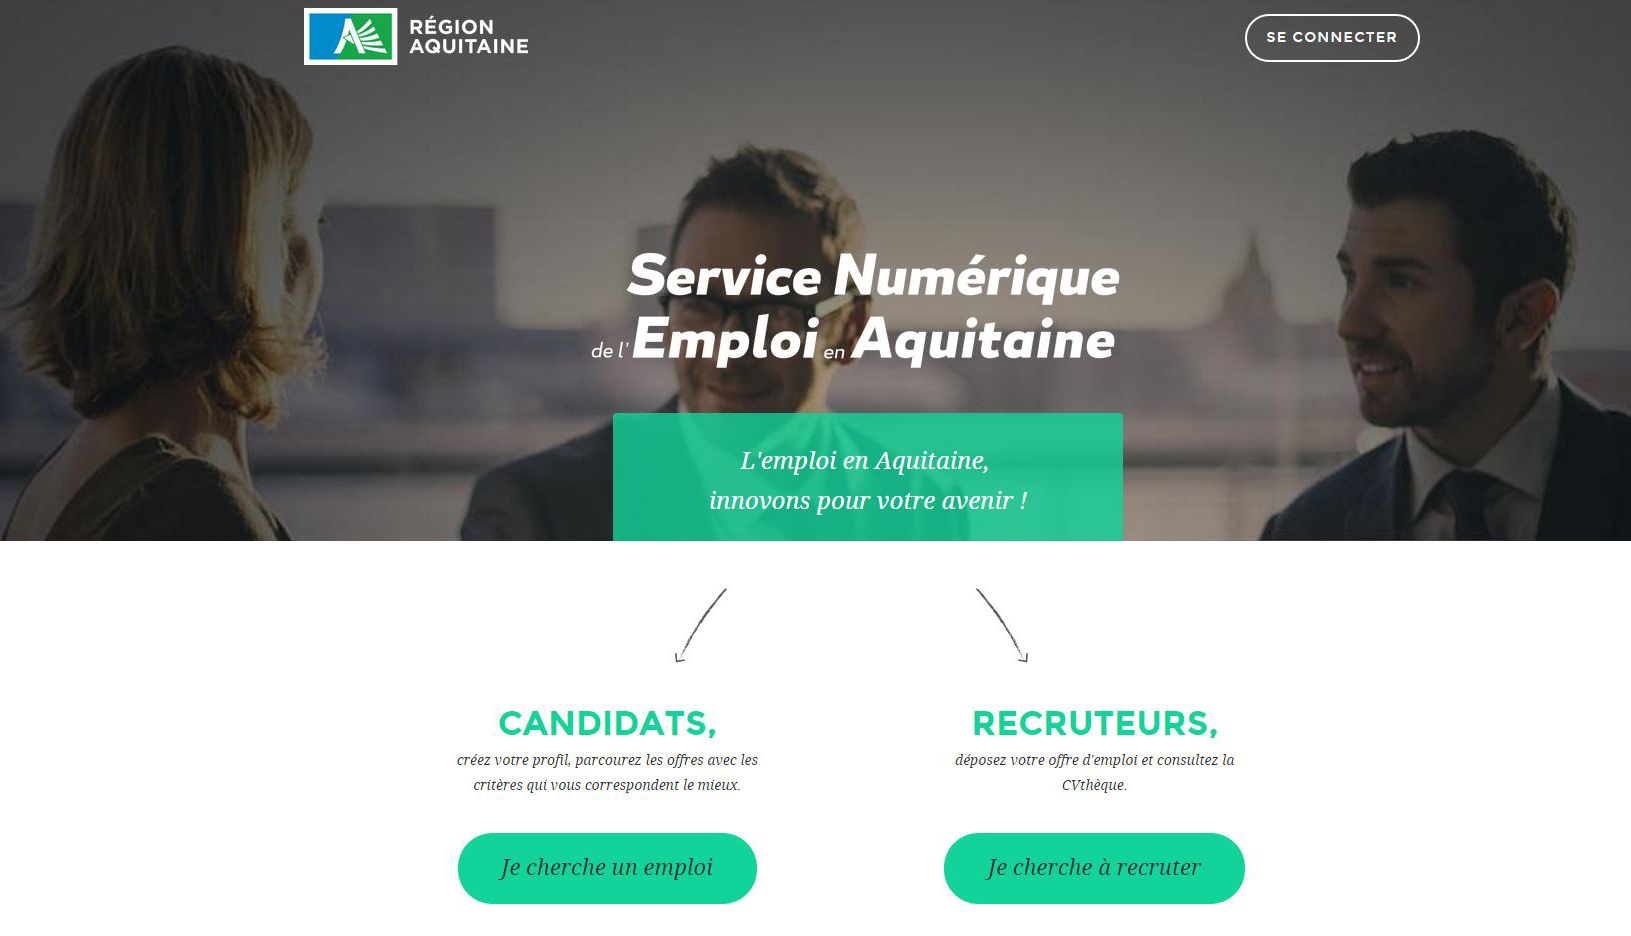 ​La Région Aquitaine développe un service numérique pour l’emploi